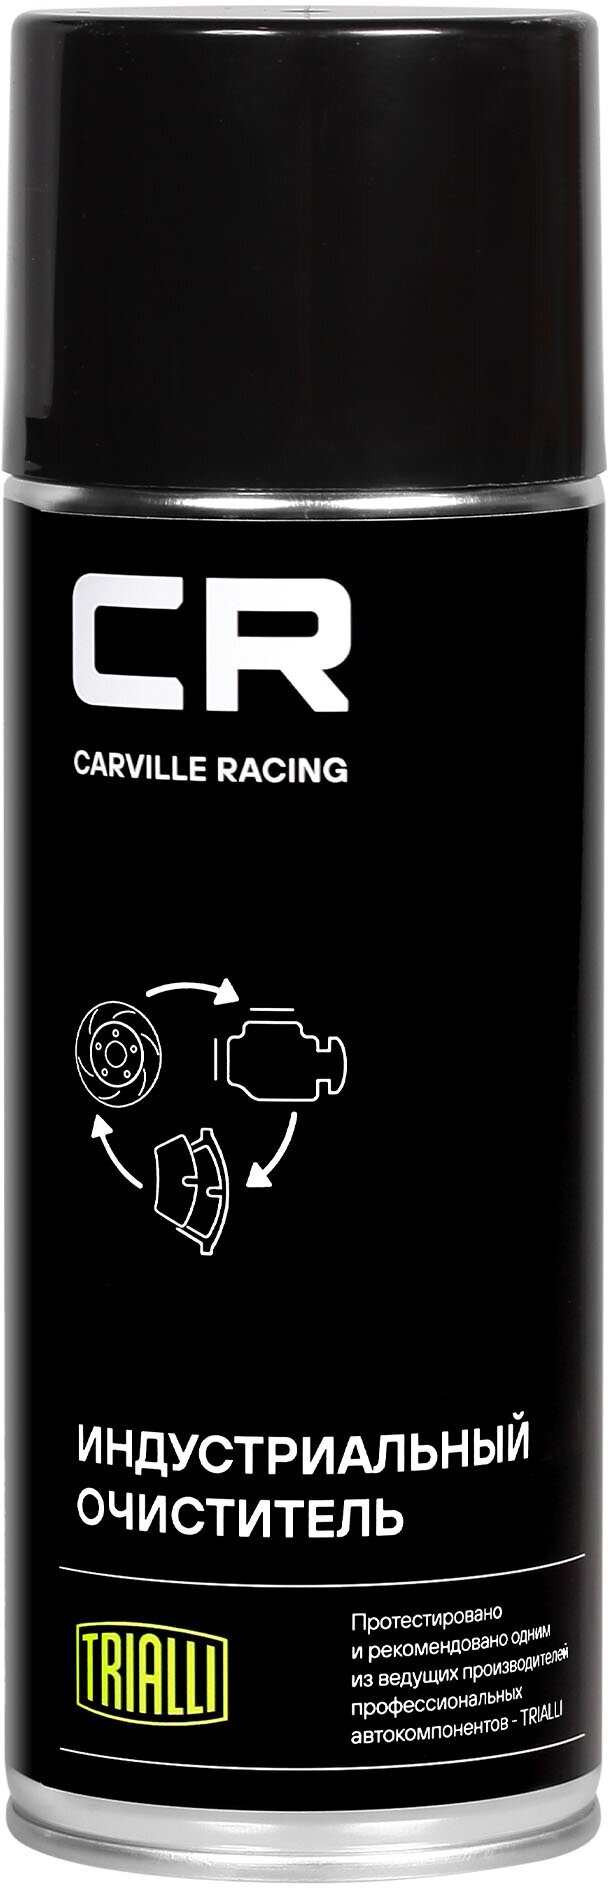 Очиститель индустриальный, аэрозоль, 520ml Carville Racing - фото №1